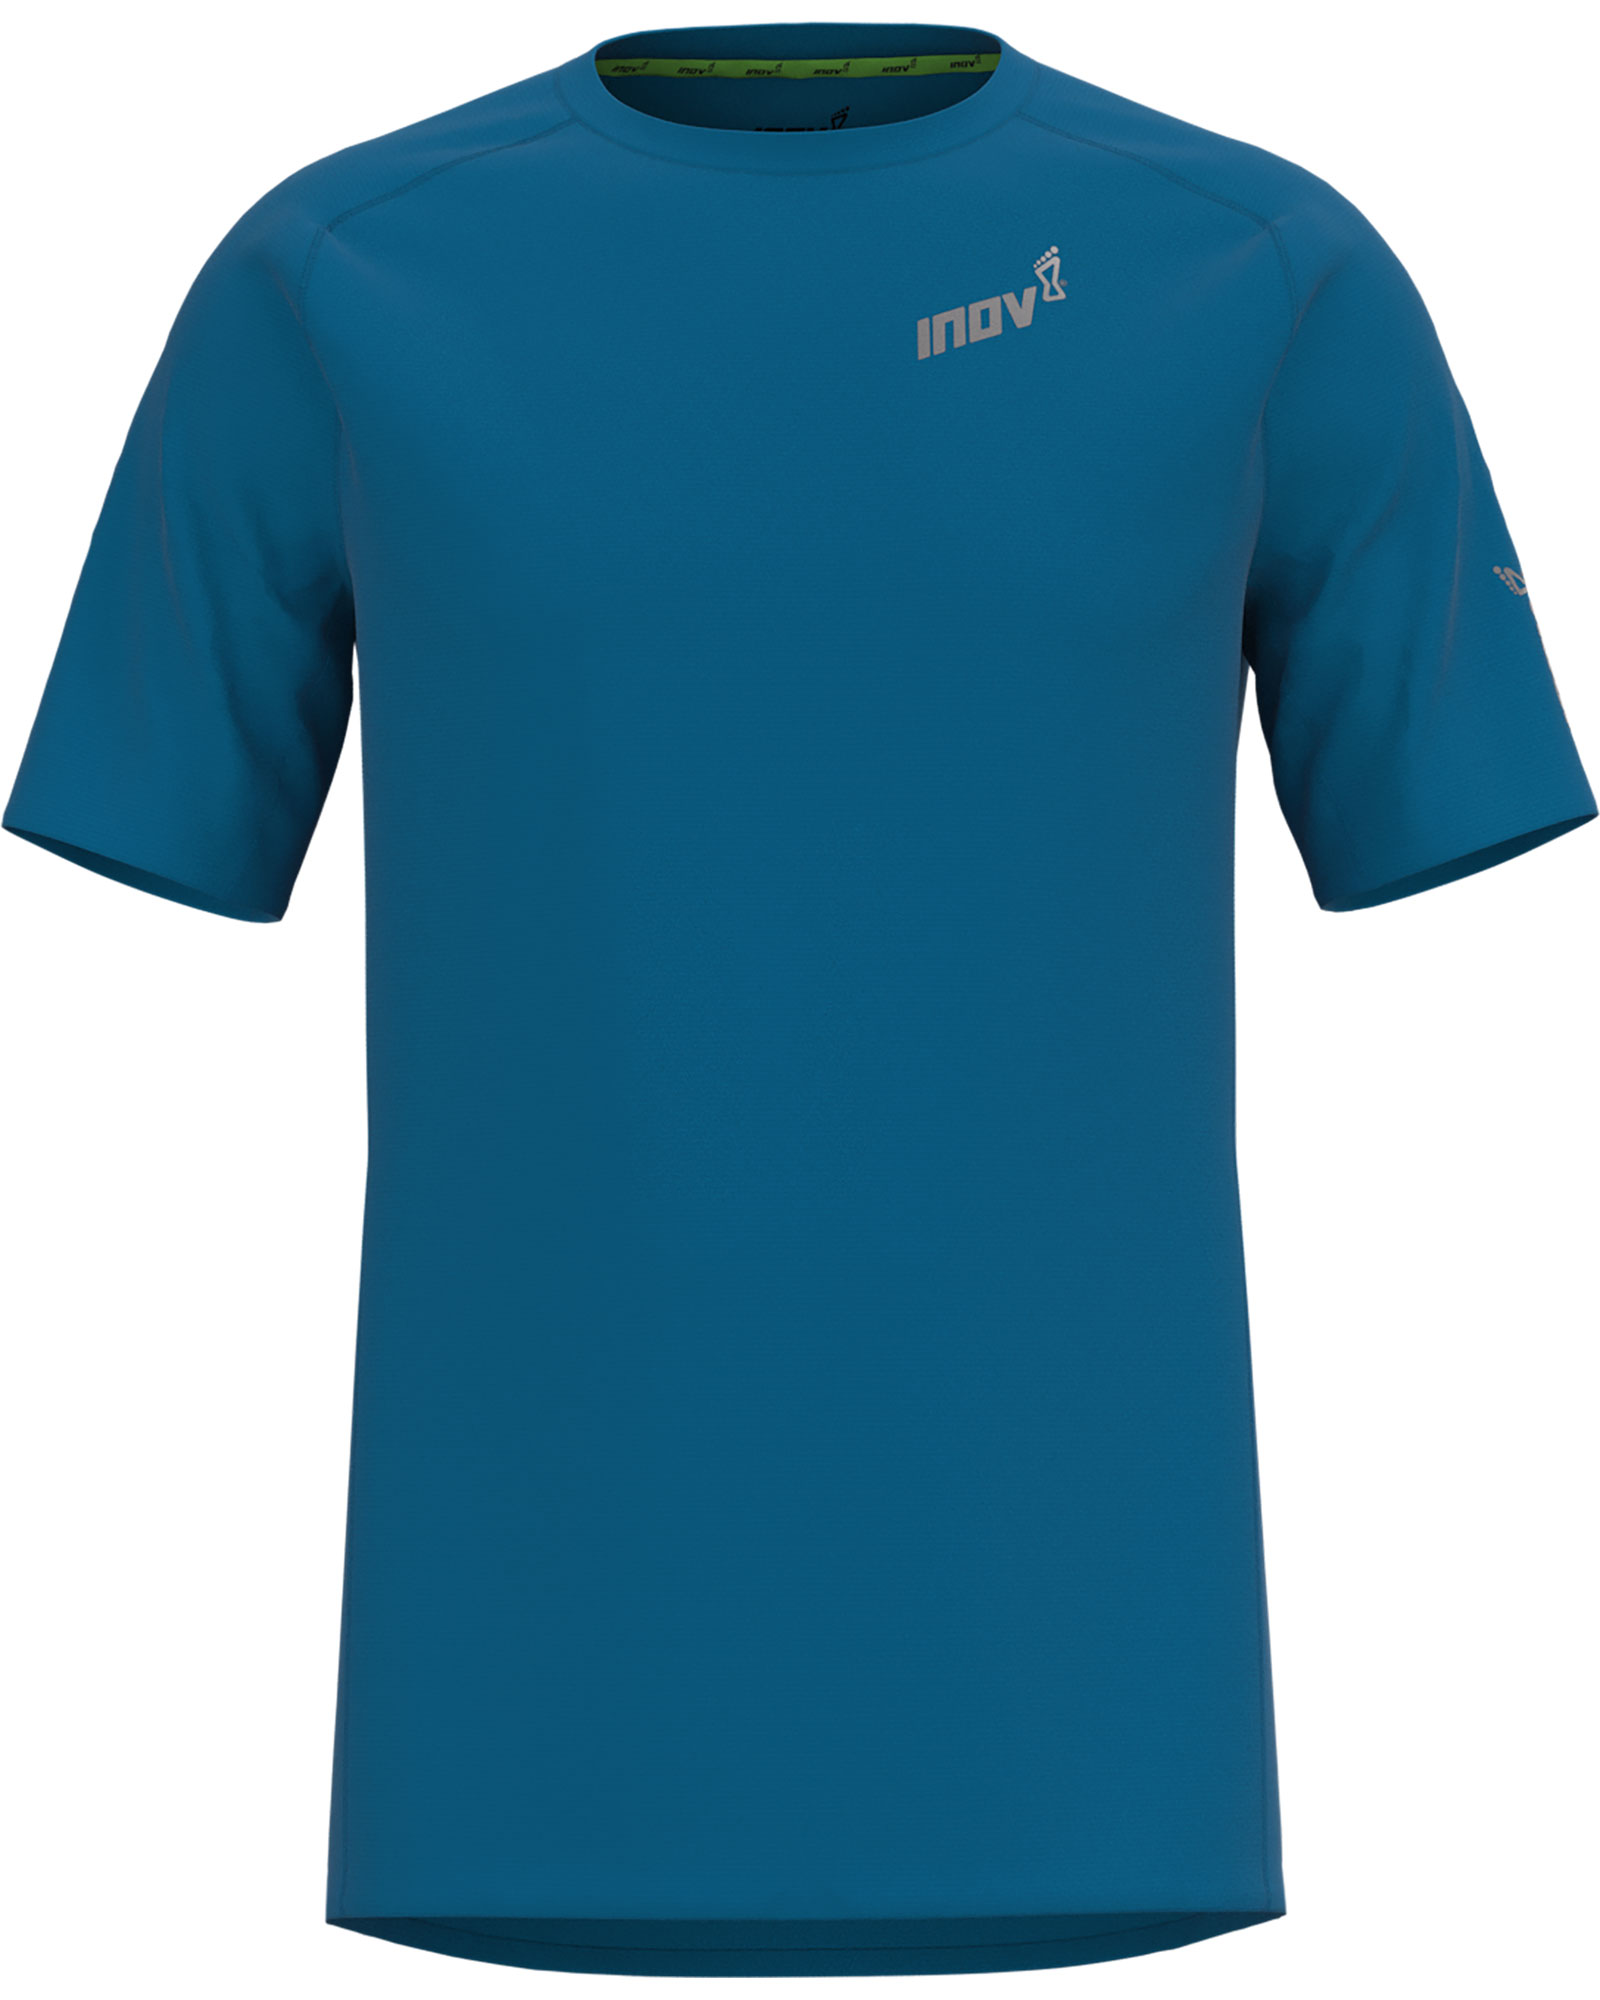 Inov 8 Base Elite Men’s T Shirt - Blue S